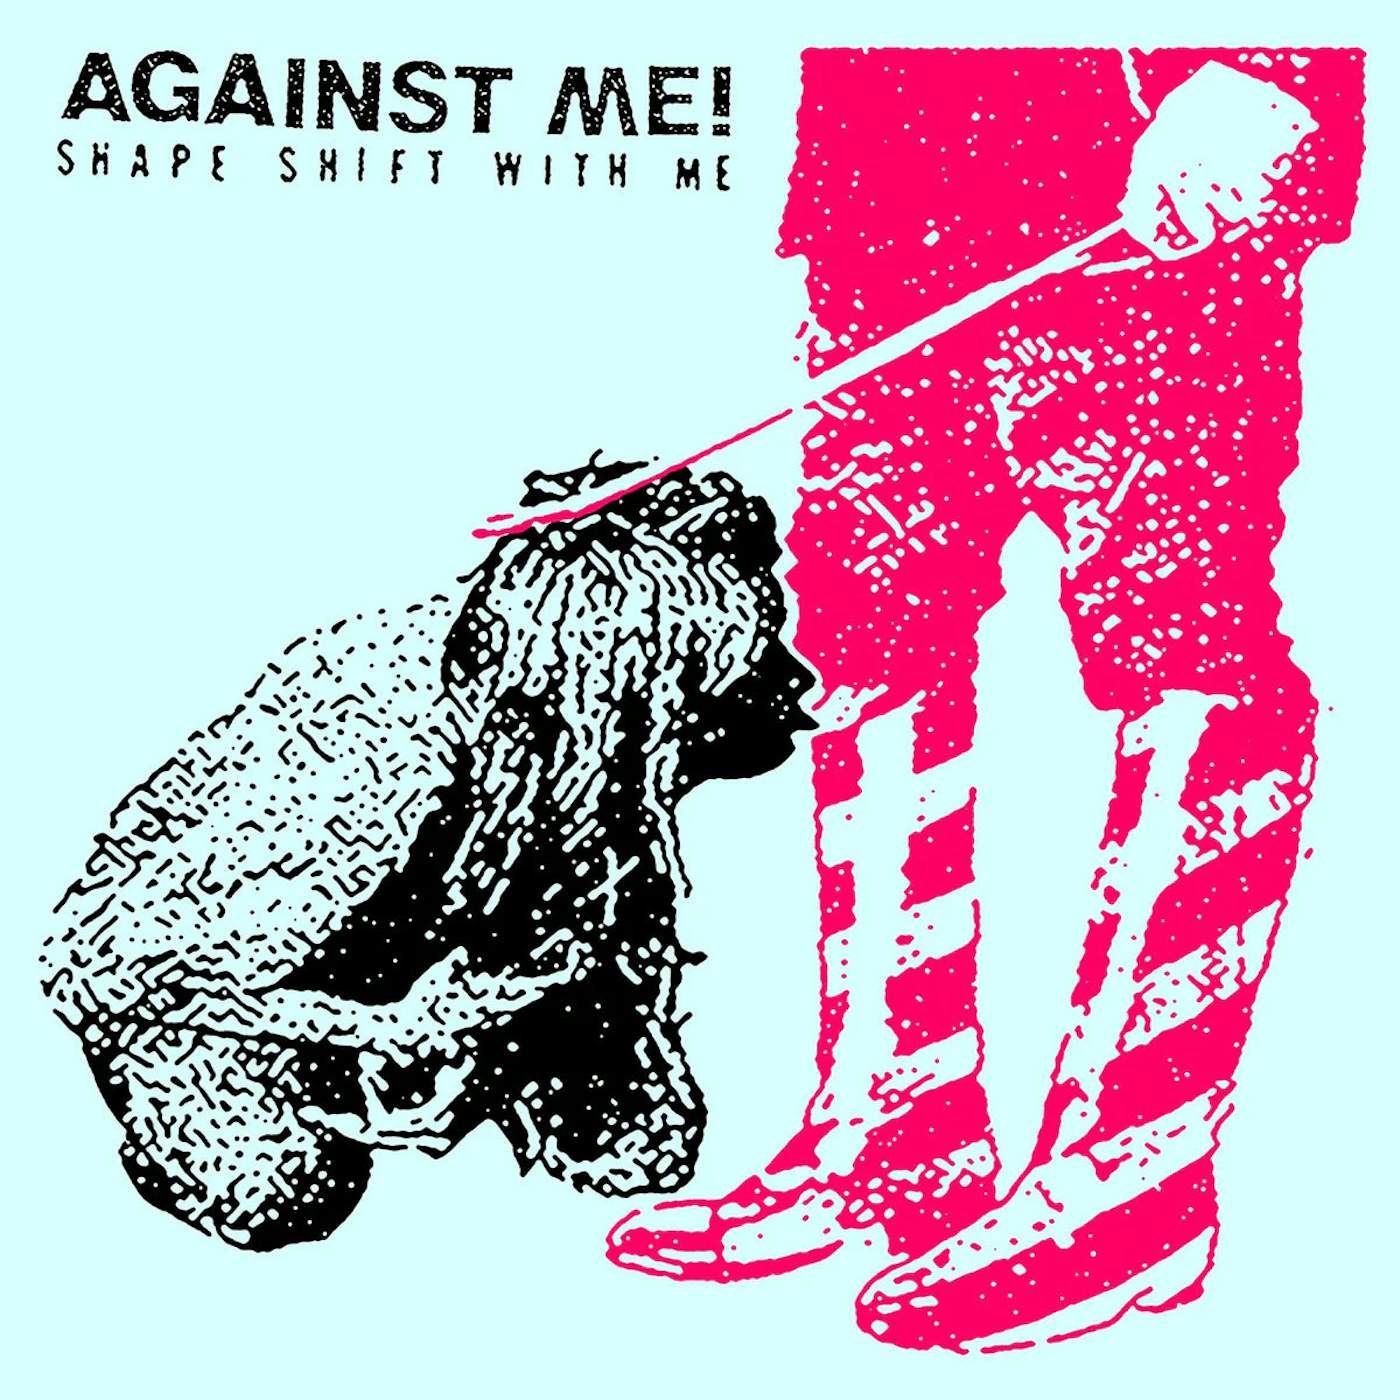  Against Me! LP - Shape Shift With Me (Vinyl)